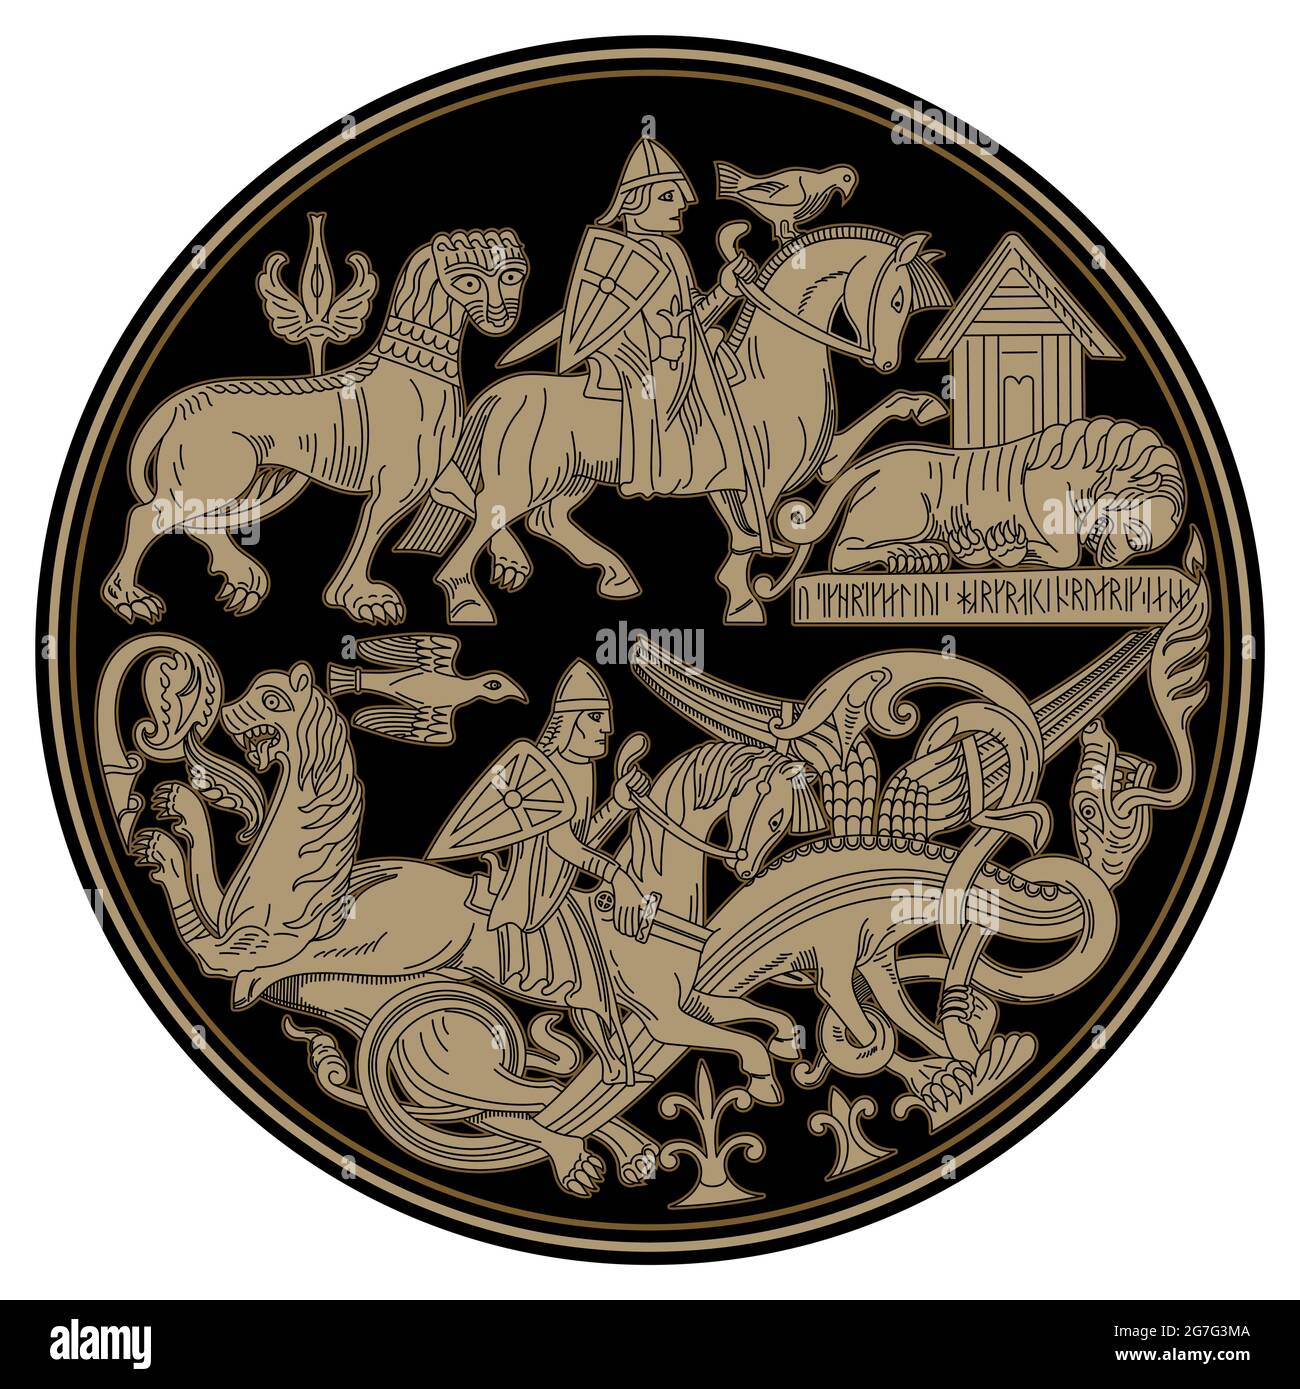 Diseño escandinavo vikingo. Los jinetes vikingos luchan contra animales míticos - leones y dragones Ilustración del Vector